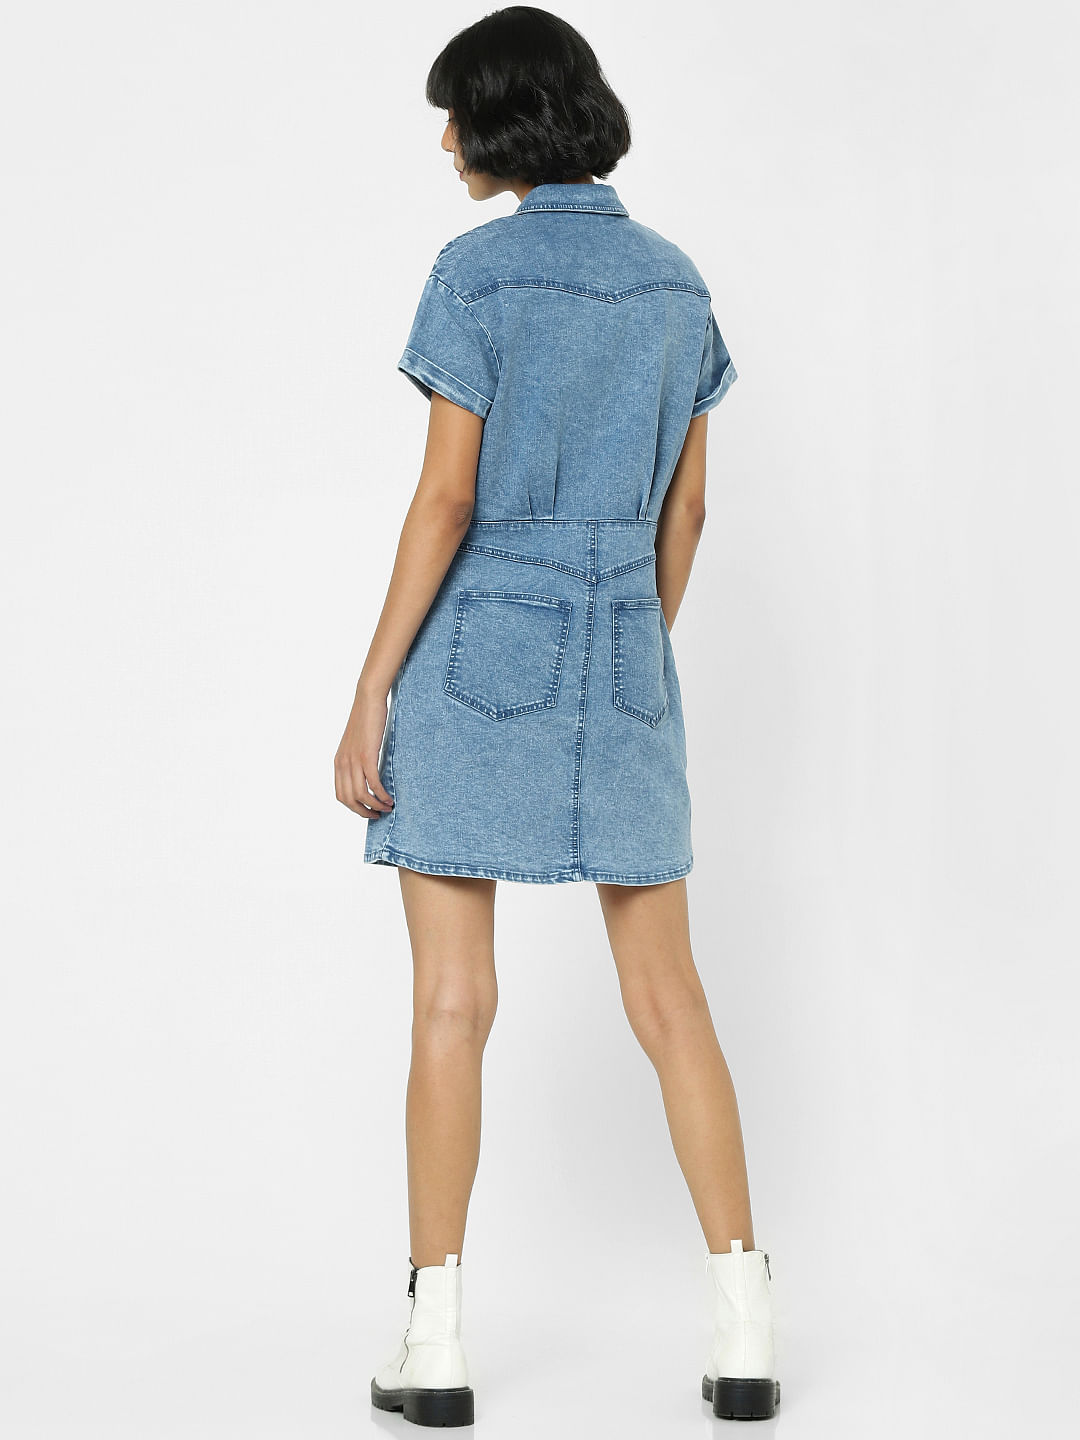 Madame Tara Sutaria Blue Denim Dress | Buy COLOR Blue Dress Online for |  Glamly